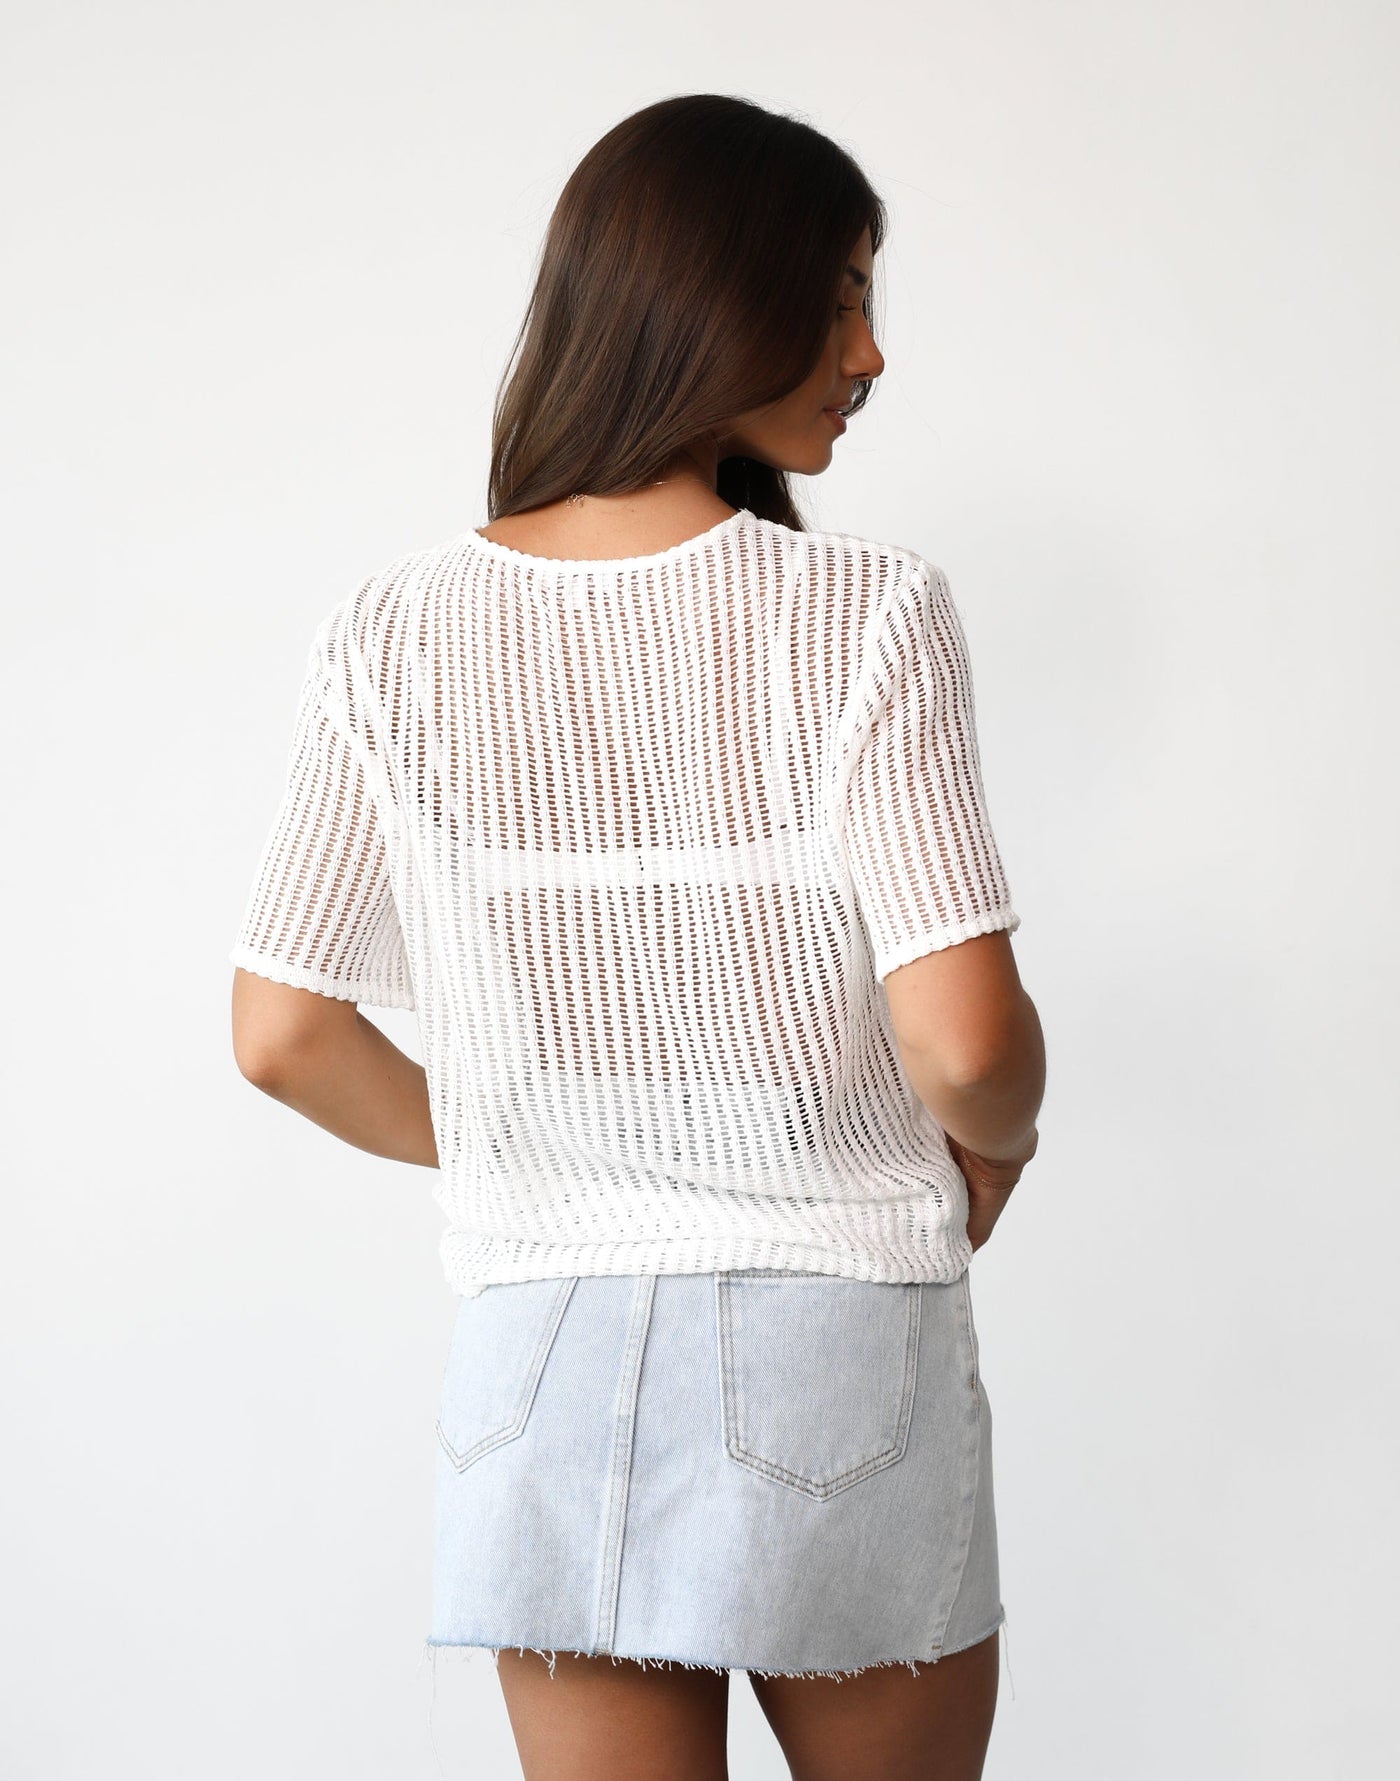 Kalli Shirt (White) - Sheer Crochet/Knit Oversized Shirt - Women's Top - Charcoal Clothing